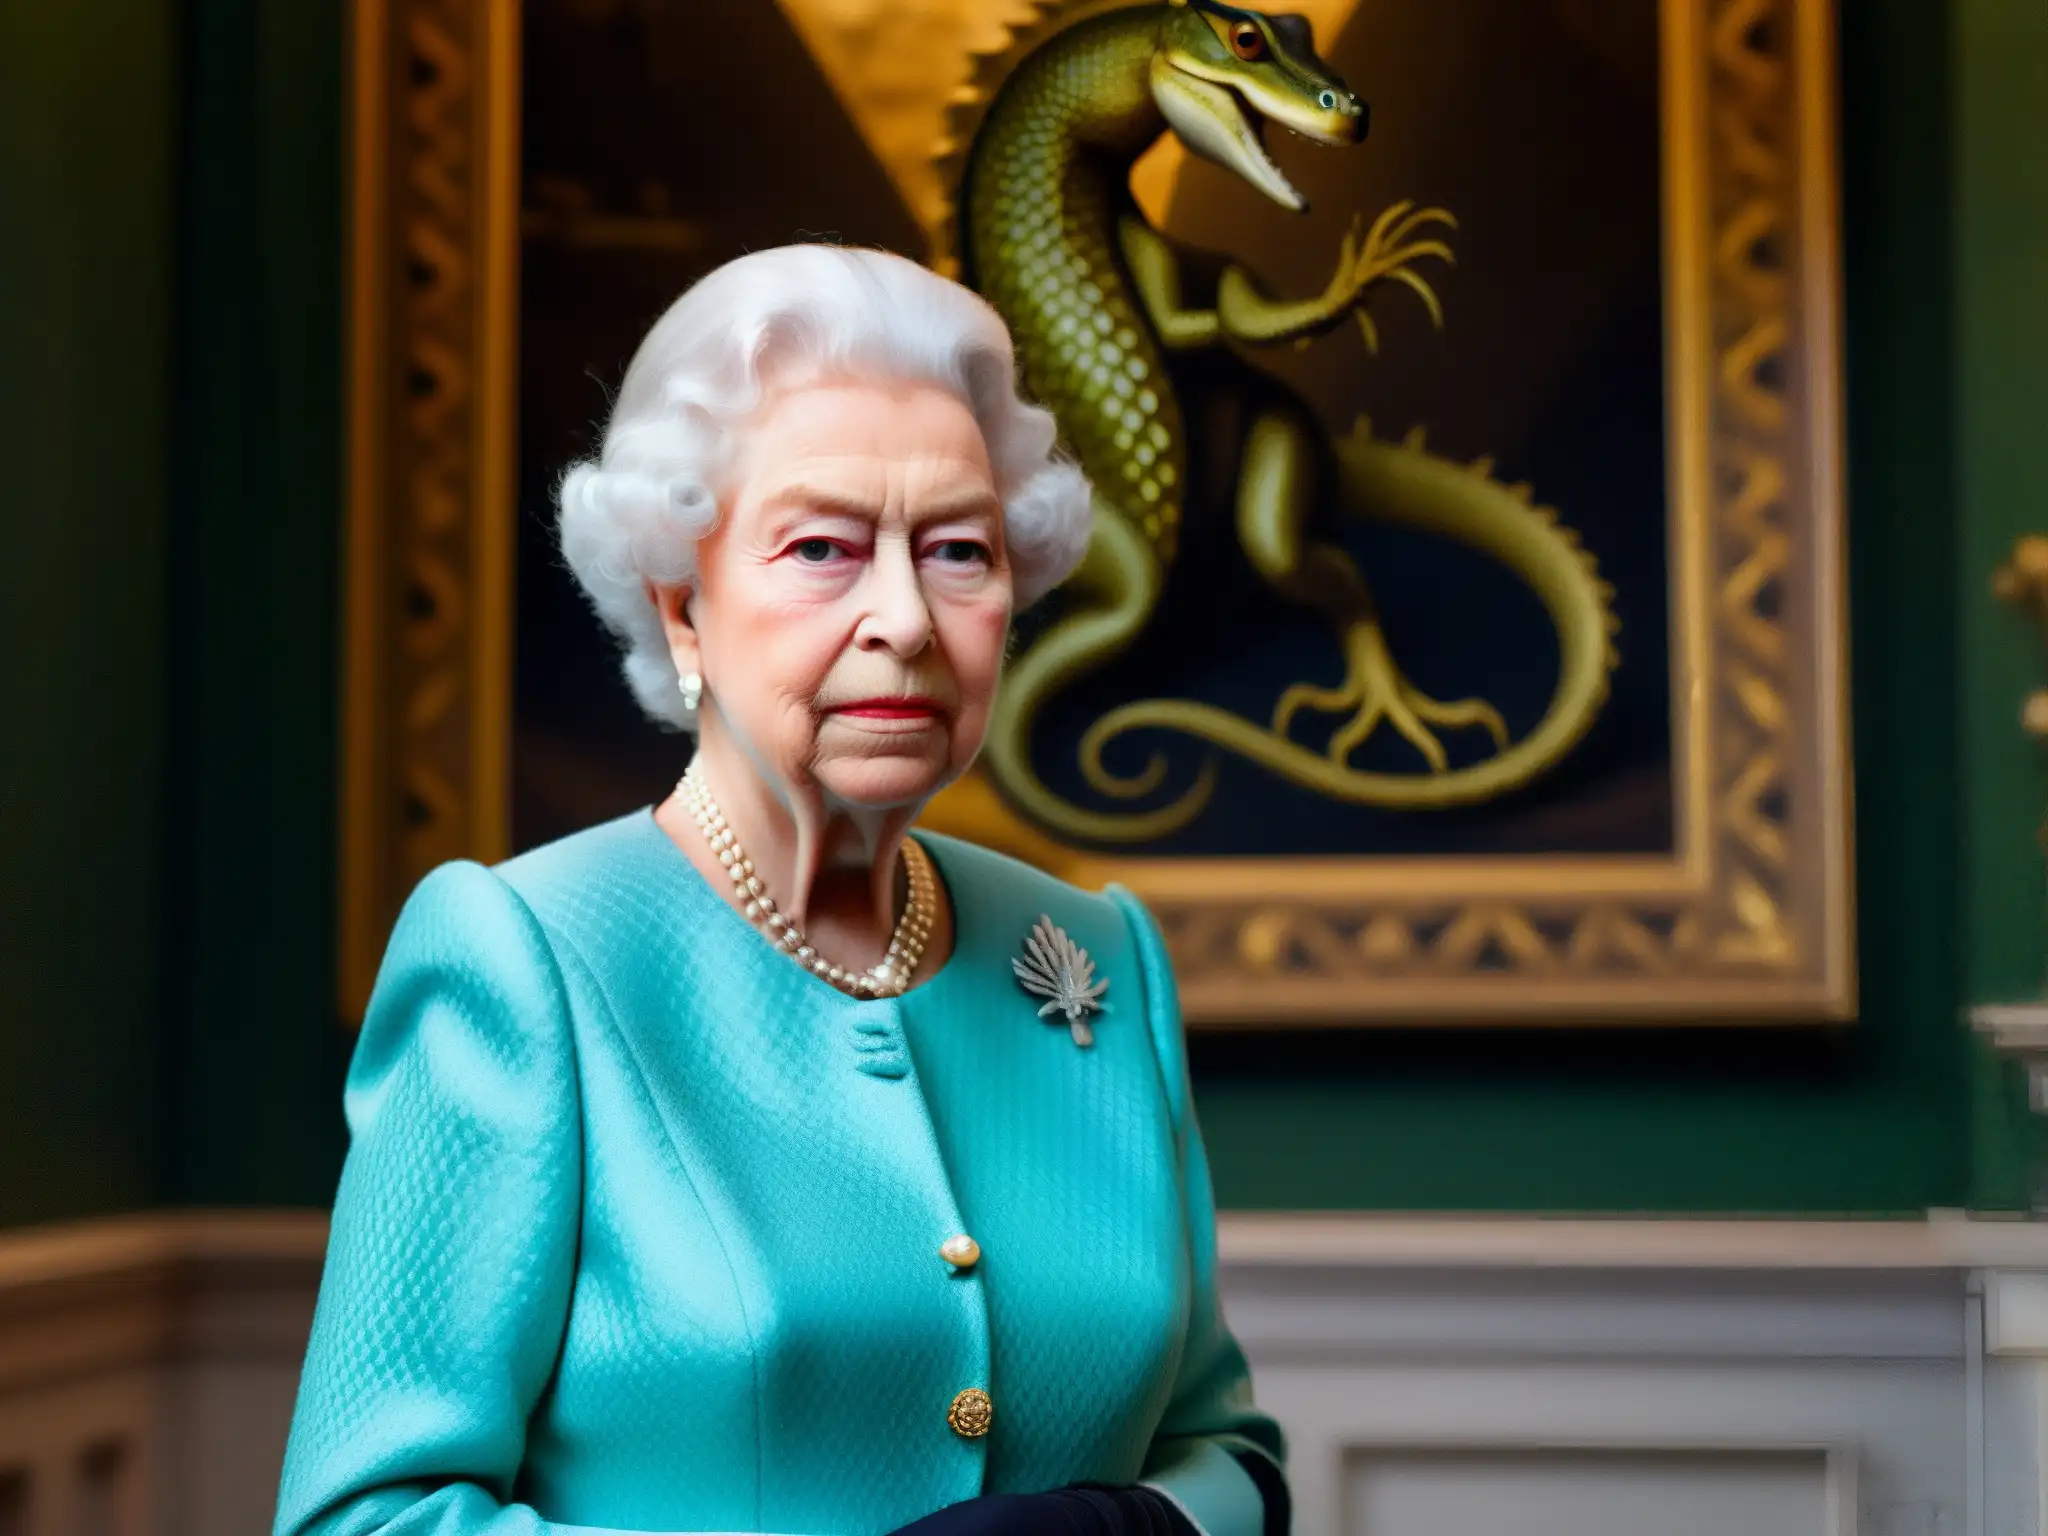 Una intrigante imagen de la Reina Isabel II frente a un enigmático cuadro de un reptil real, con una atmósfera misteriosa